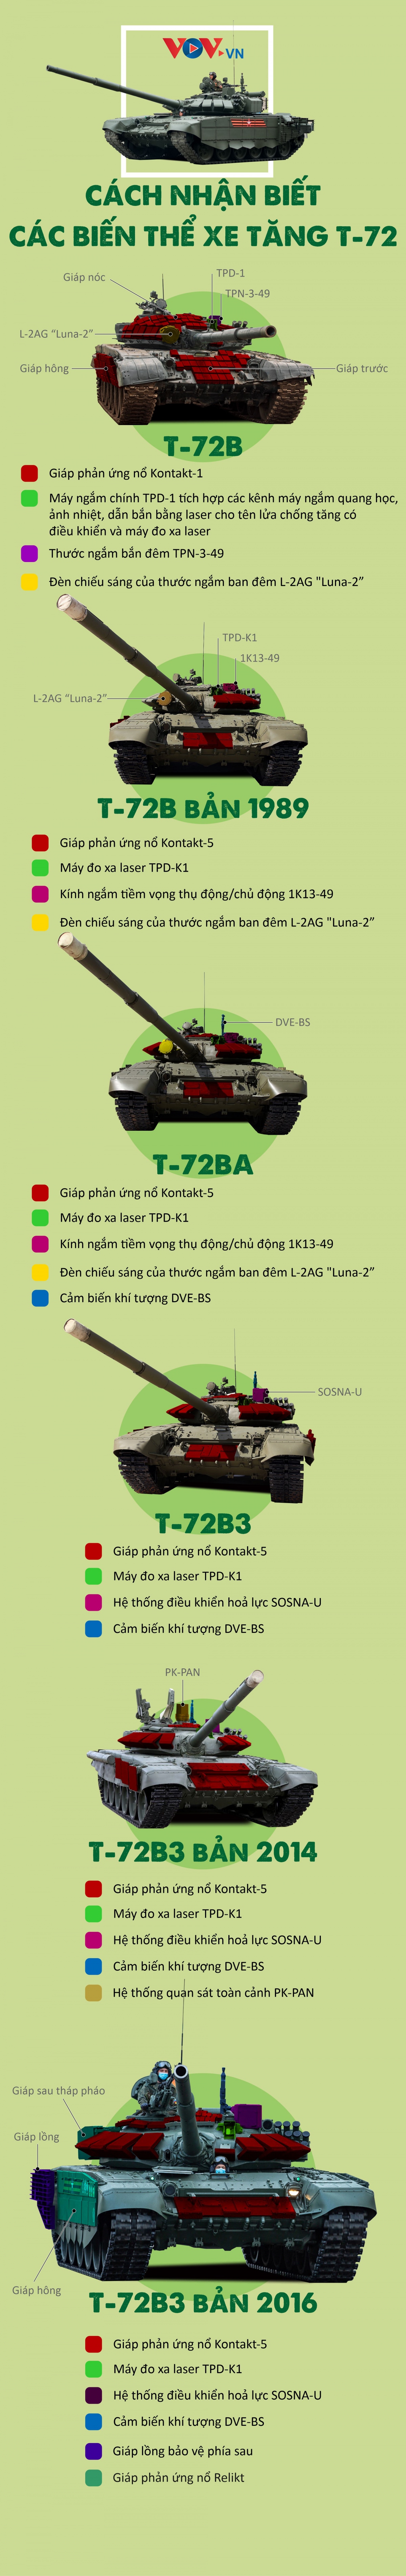 Dac diem nhan biet mot so bien the xe tang t-72 hinh anh 1